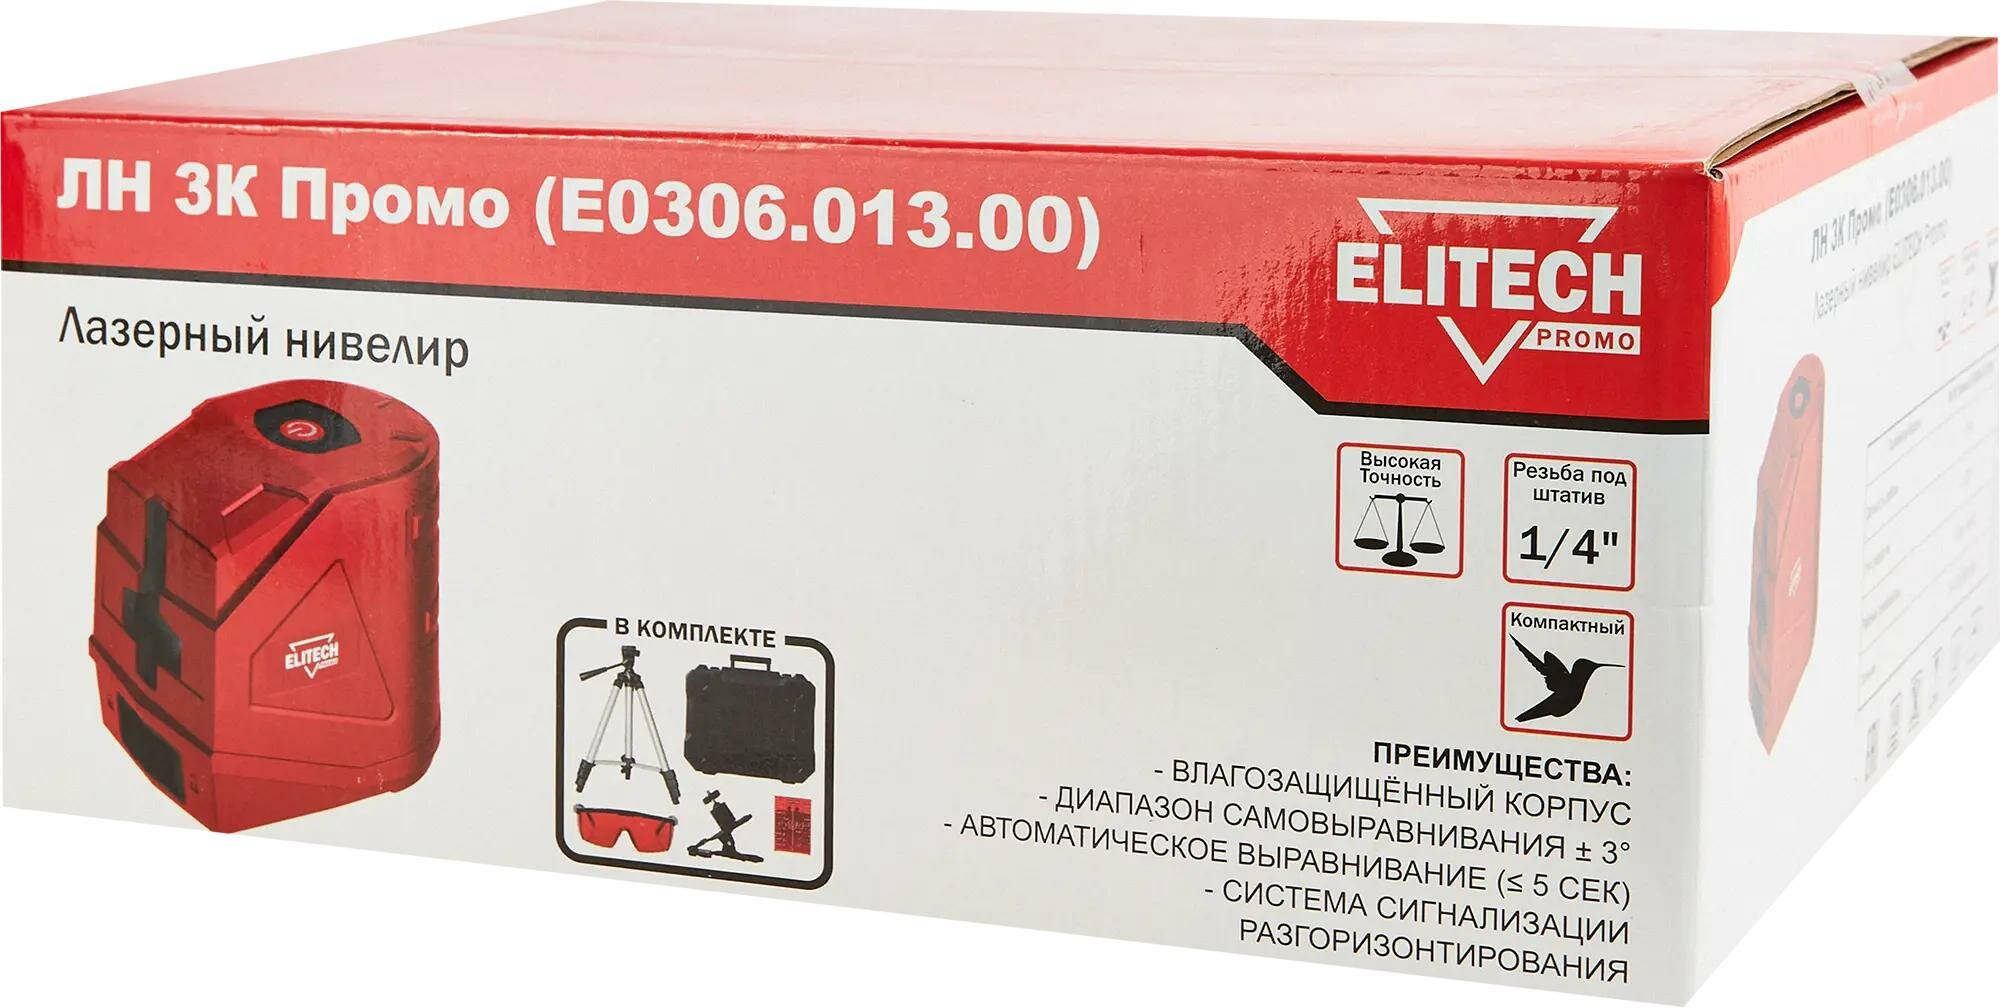 Лазерный нивелир Elitech PROMO ЛН 3К Промо (Е0306.013.00)